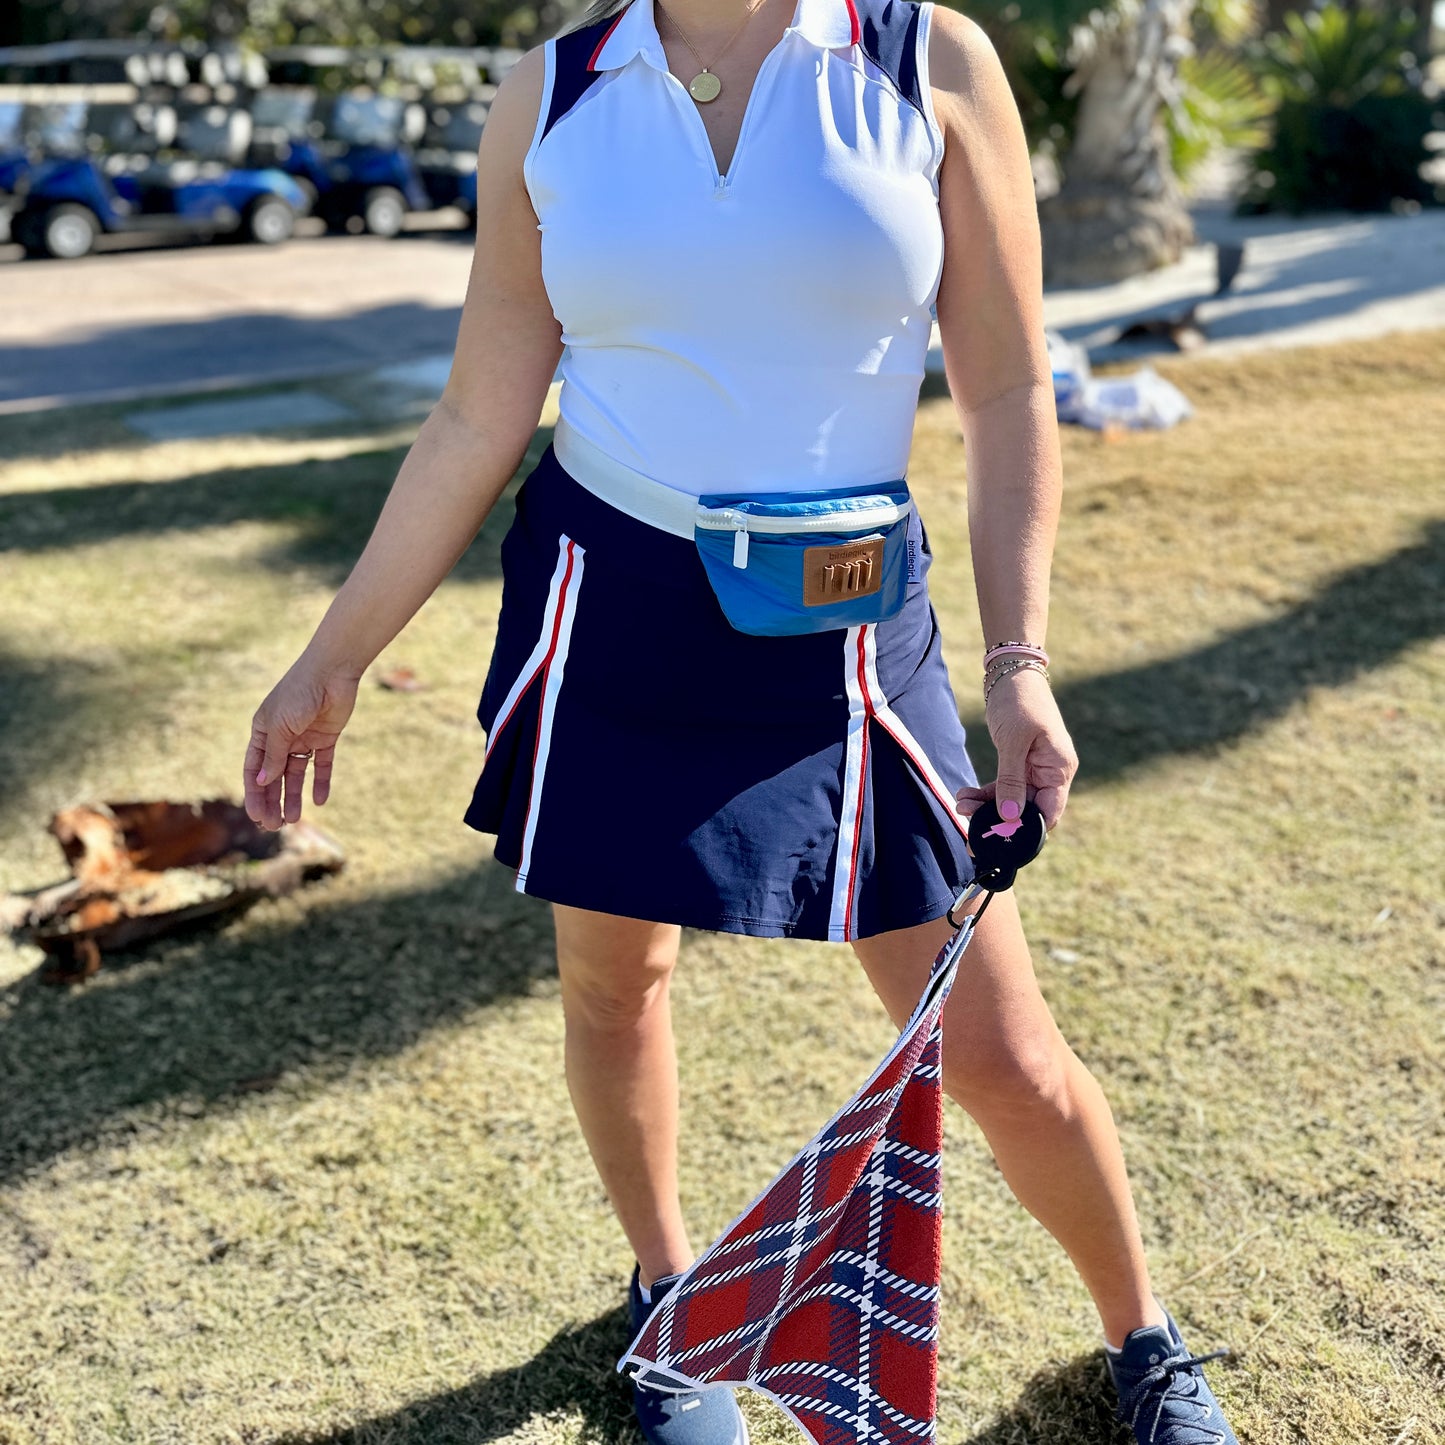 Set of 2: Ryder Plaid Magnetic Golf Towel and Golf Belt Bag